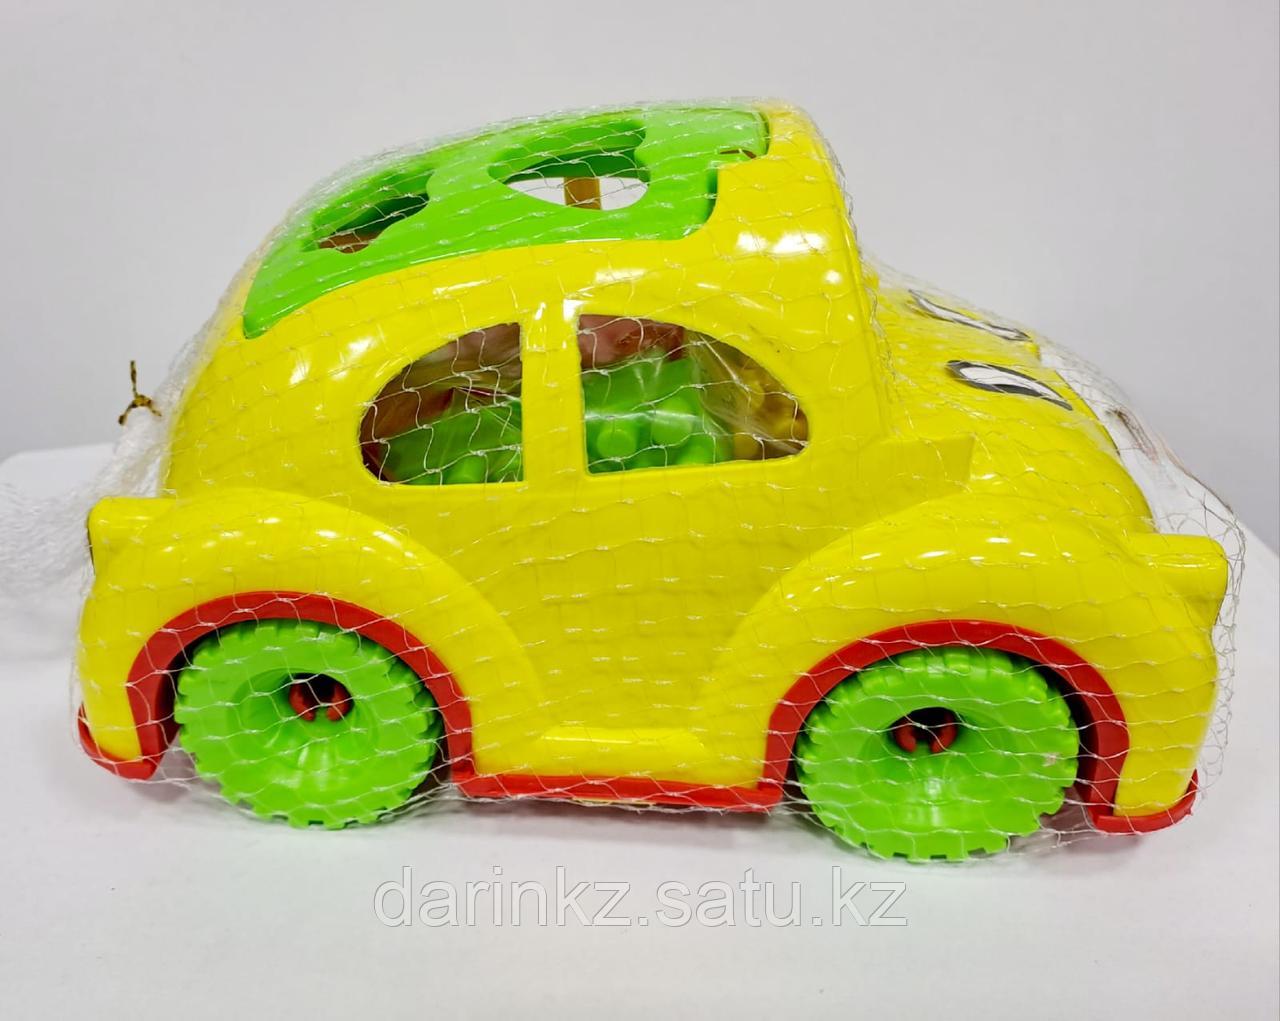 Пластмассовый игрушечный автомобиль в прозрачном пакете  Модель  КМР 122